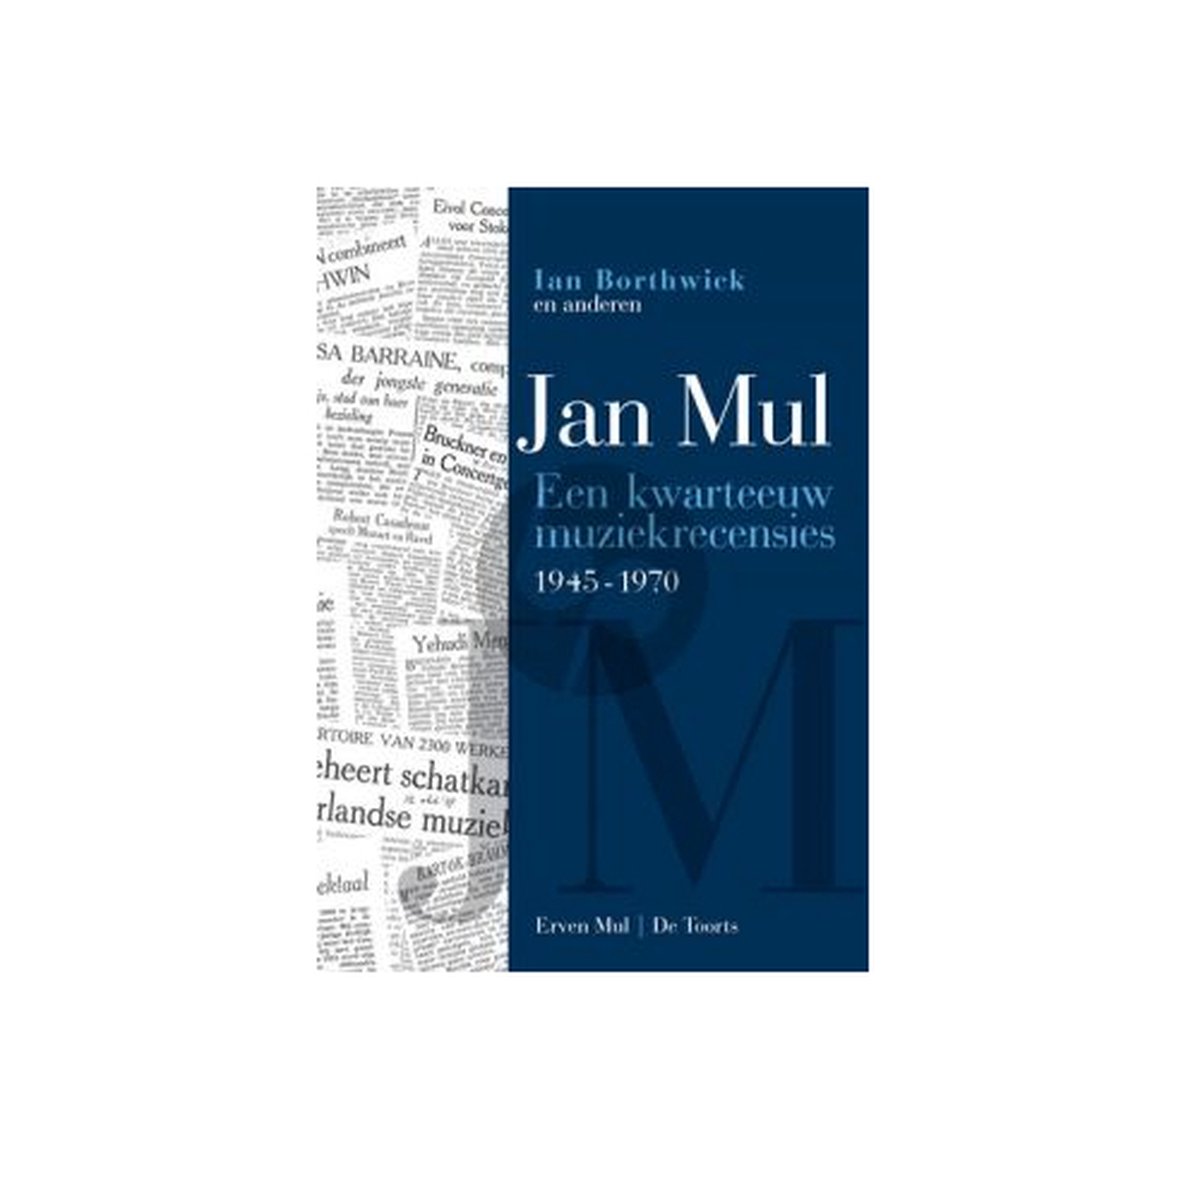 Jan Mul - Een kwarteeuw muziekrecensies 1945-1970